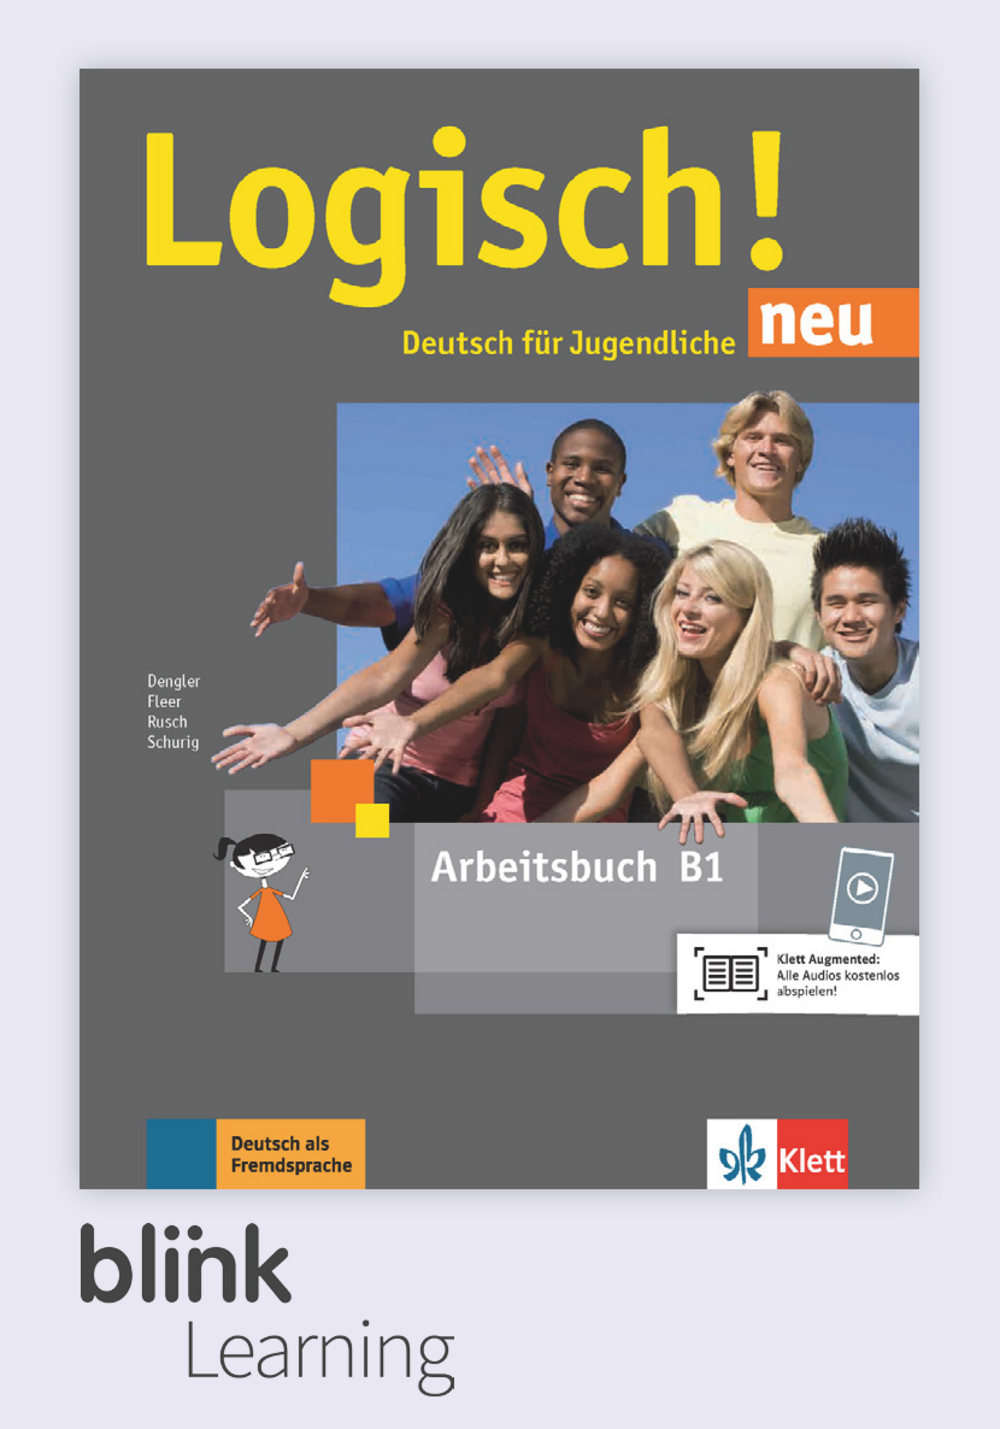 Logisch! NEU B1 Digital Arbeitsbuch für Unterrichtende / Цифровая рабочая тетрадь для учителя